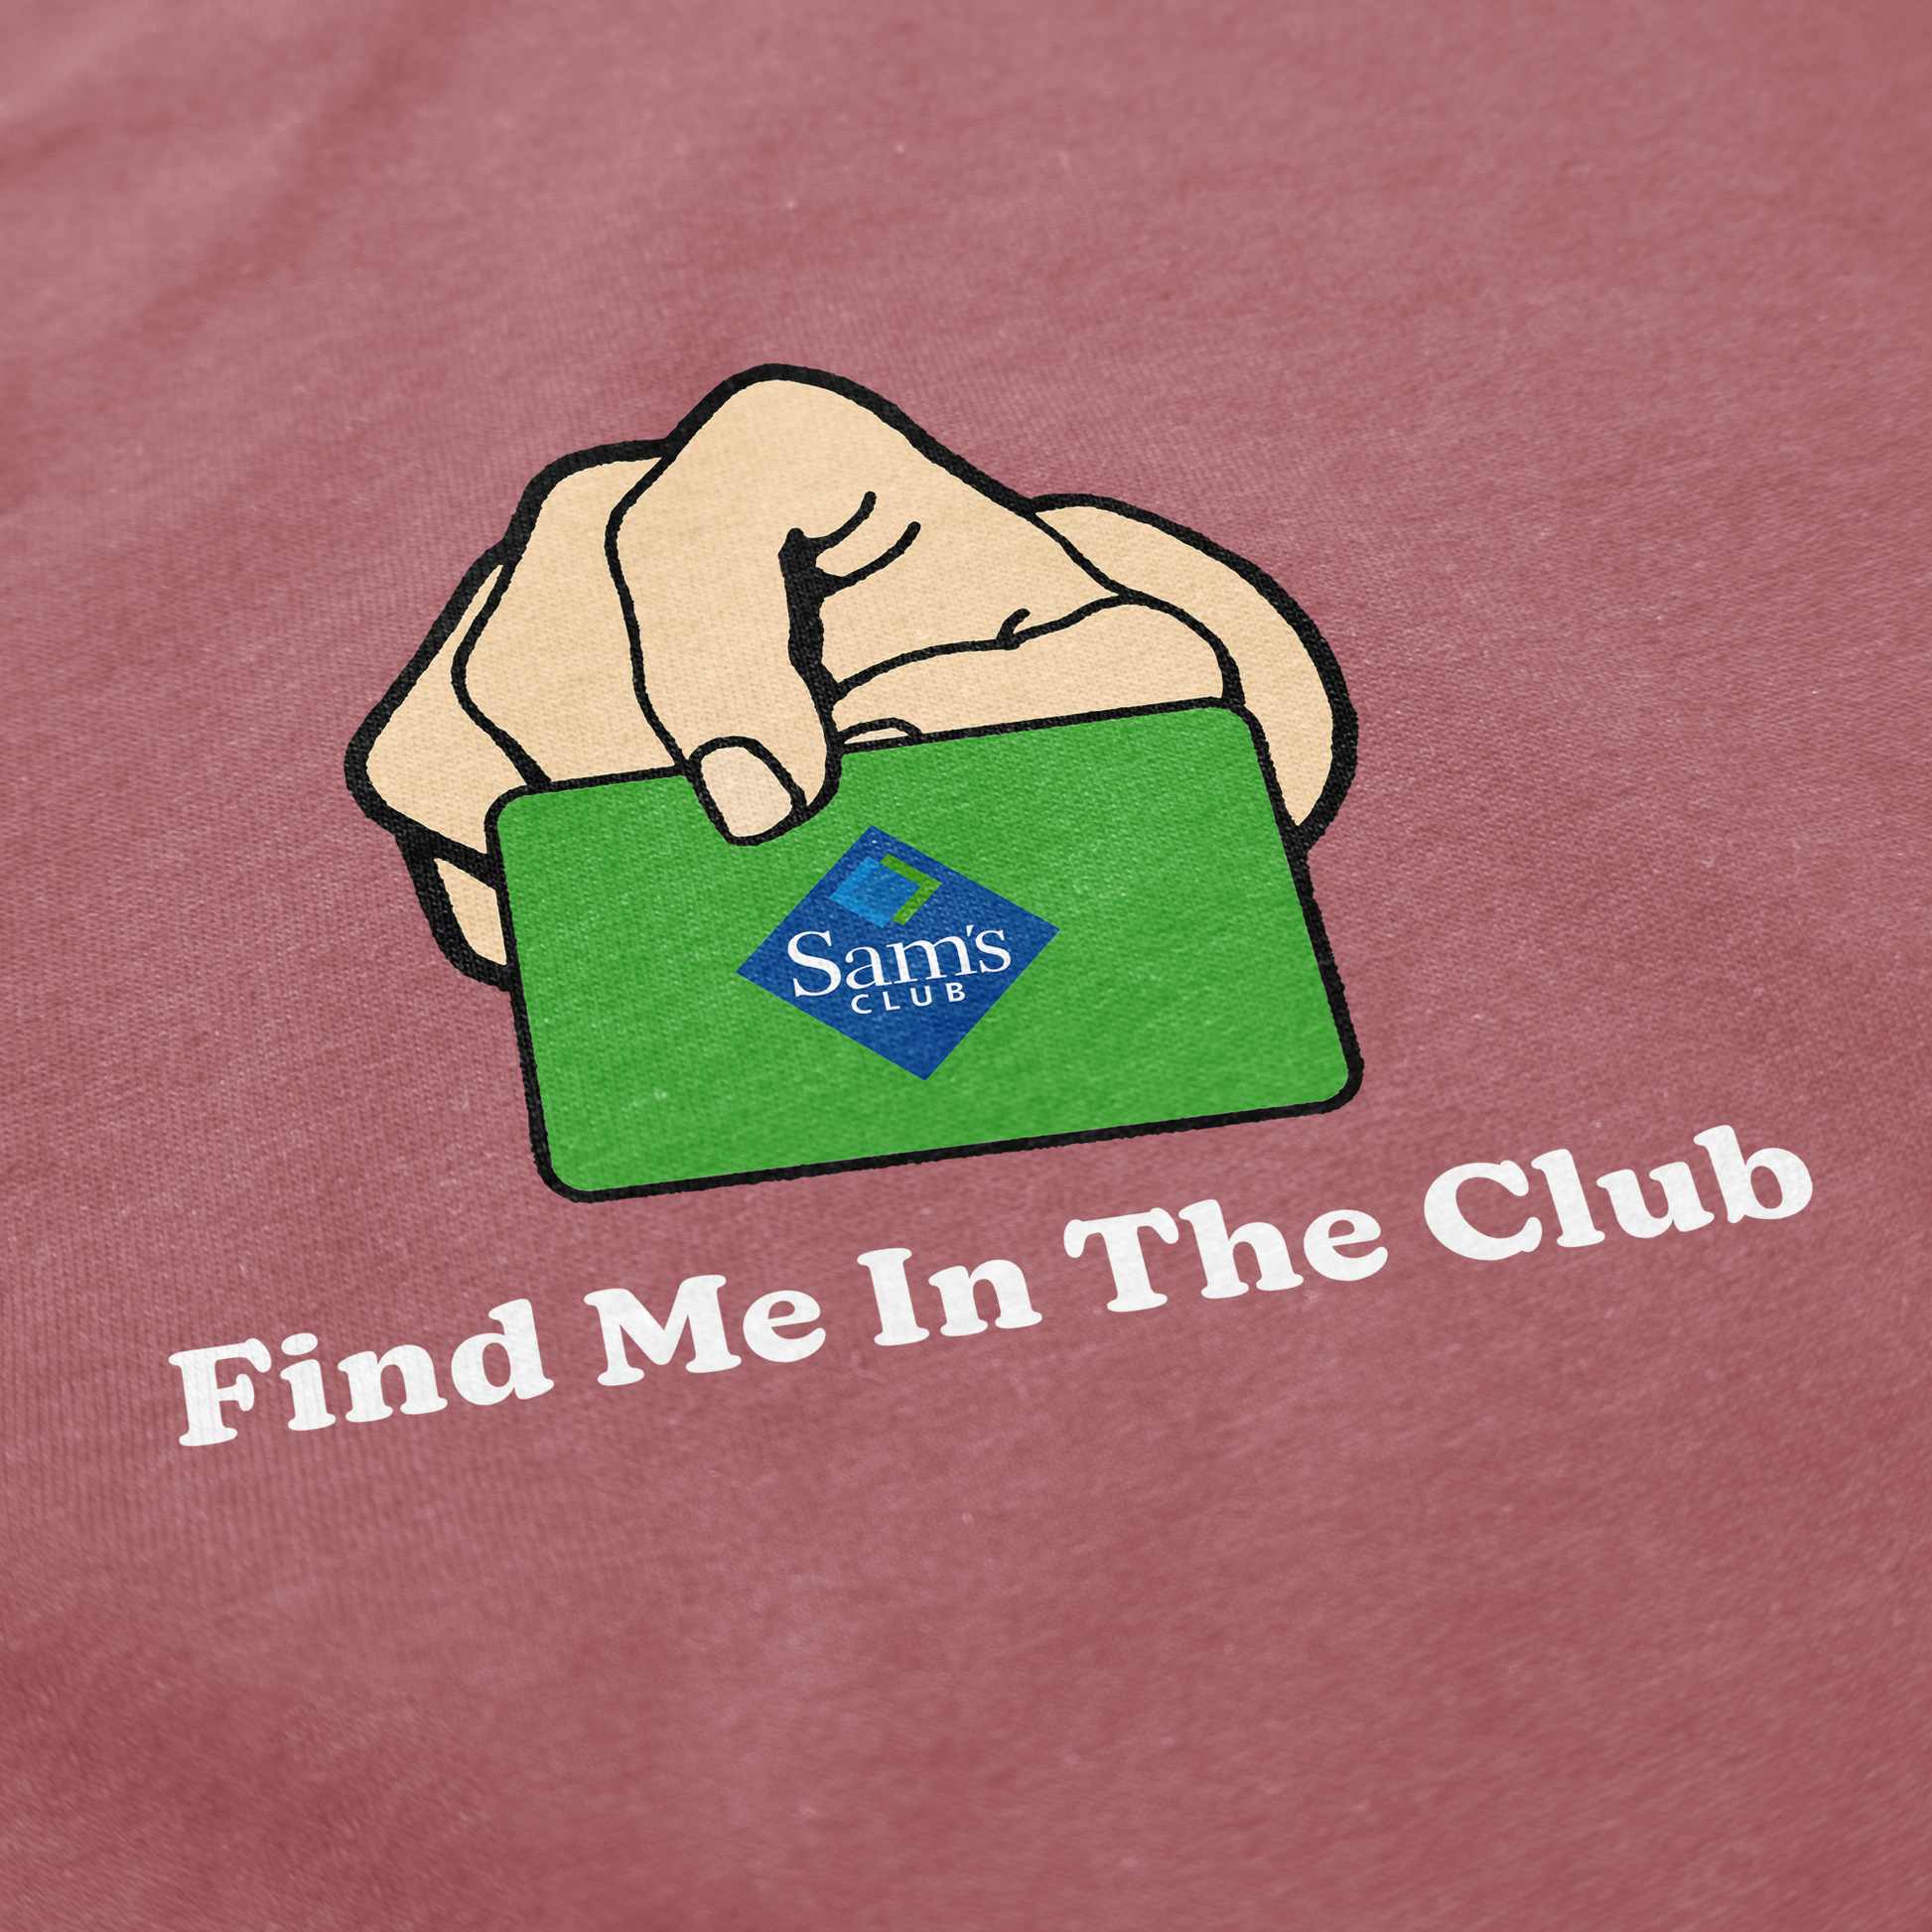 Find a Club